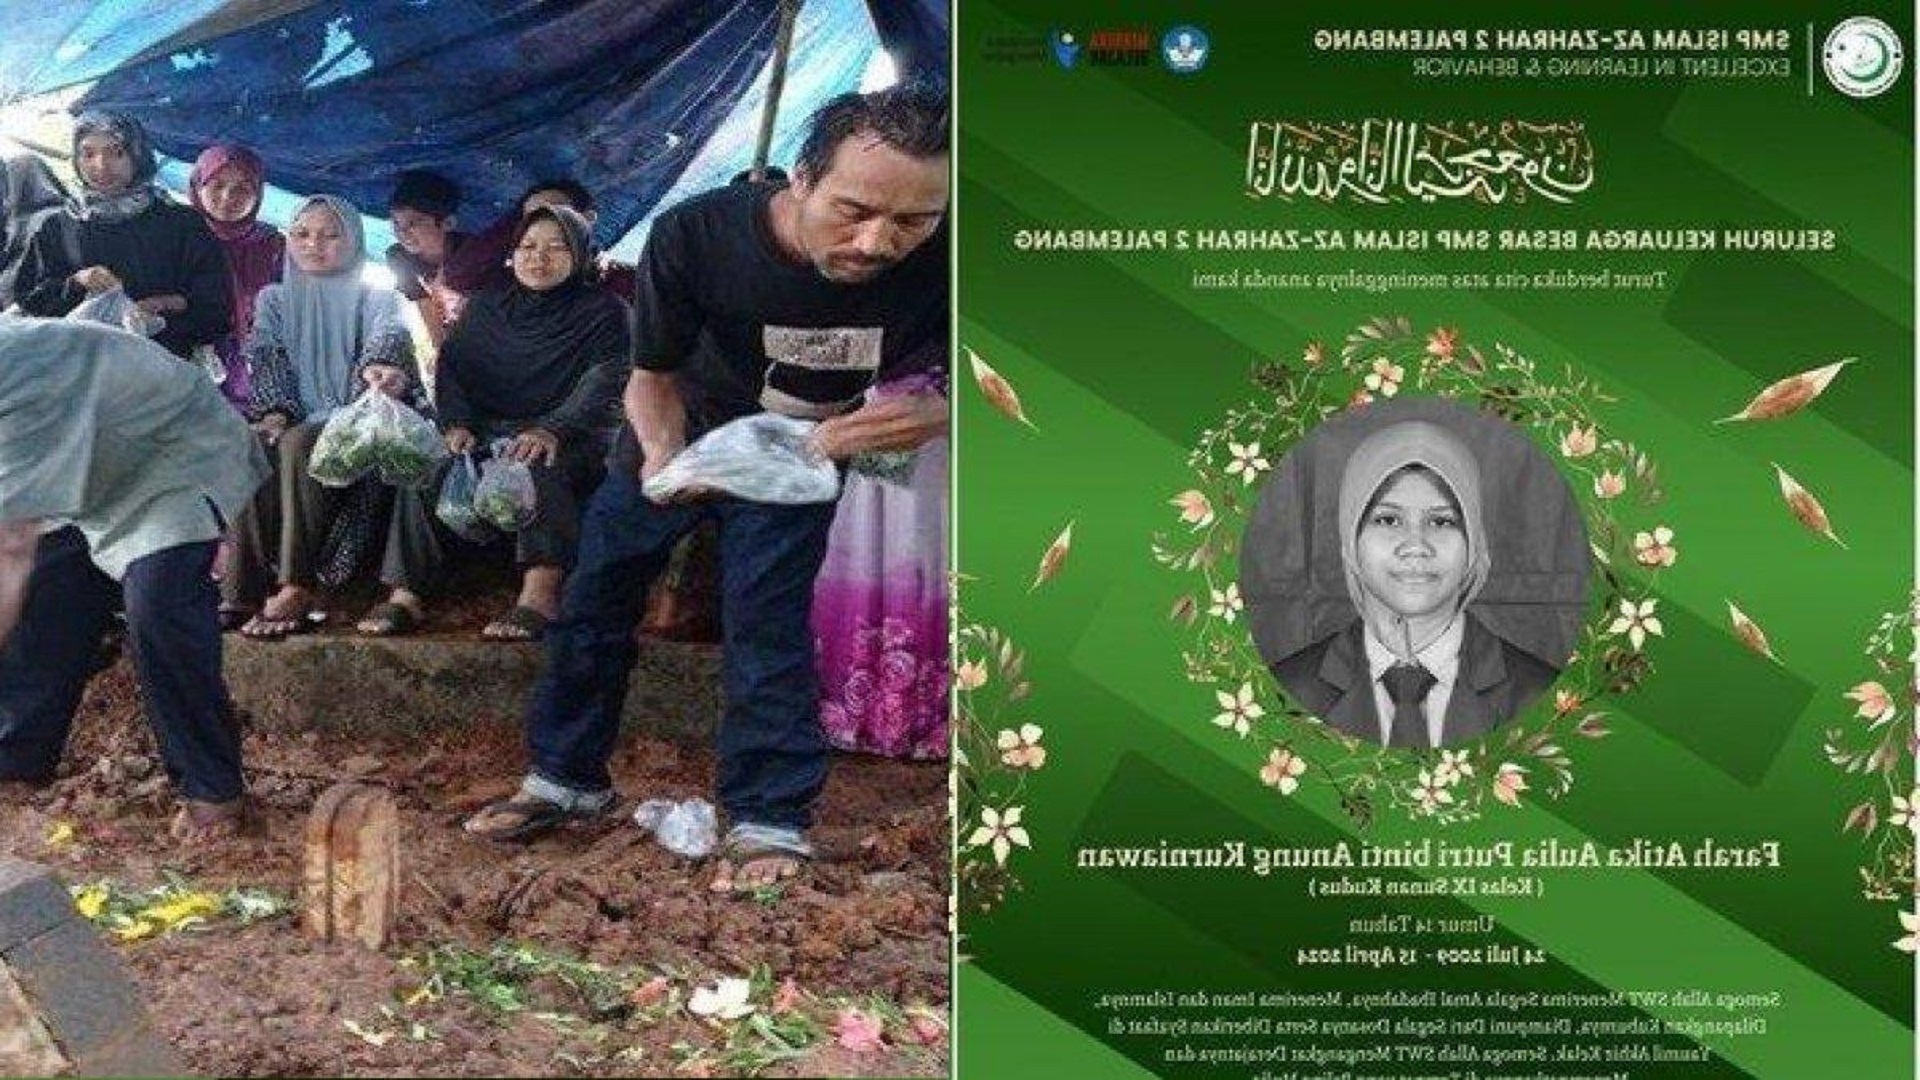 Mendiang Farah Anak SMP Asal Palembang Yang Dibunuh Bersama Ibu oleh Anak Buah Suami Korban